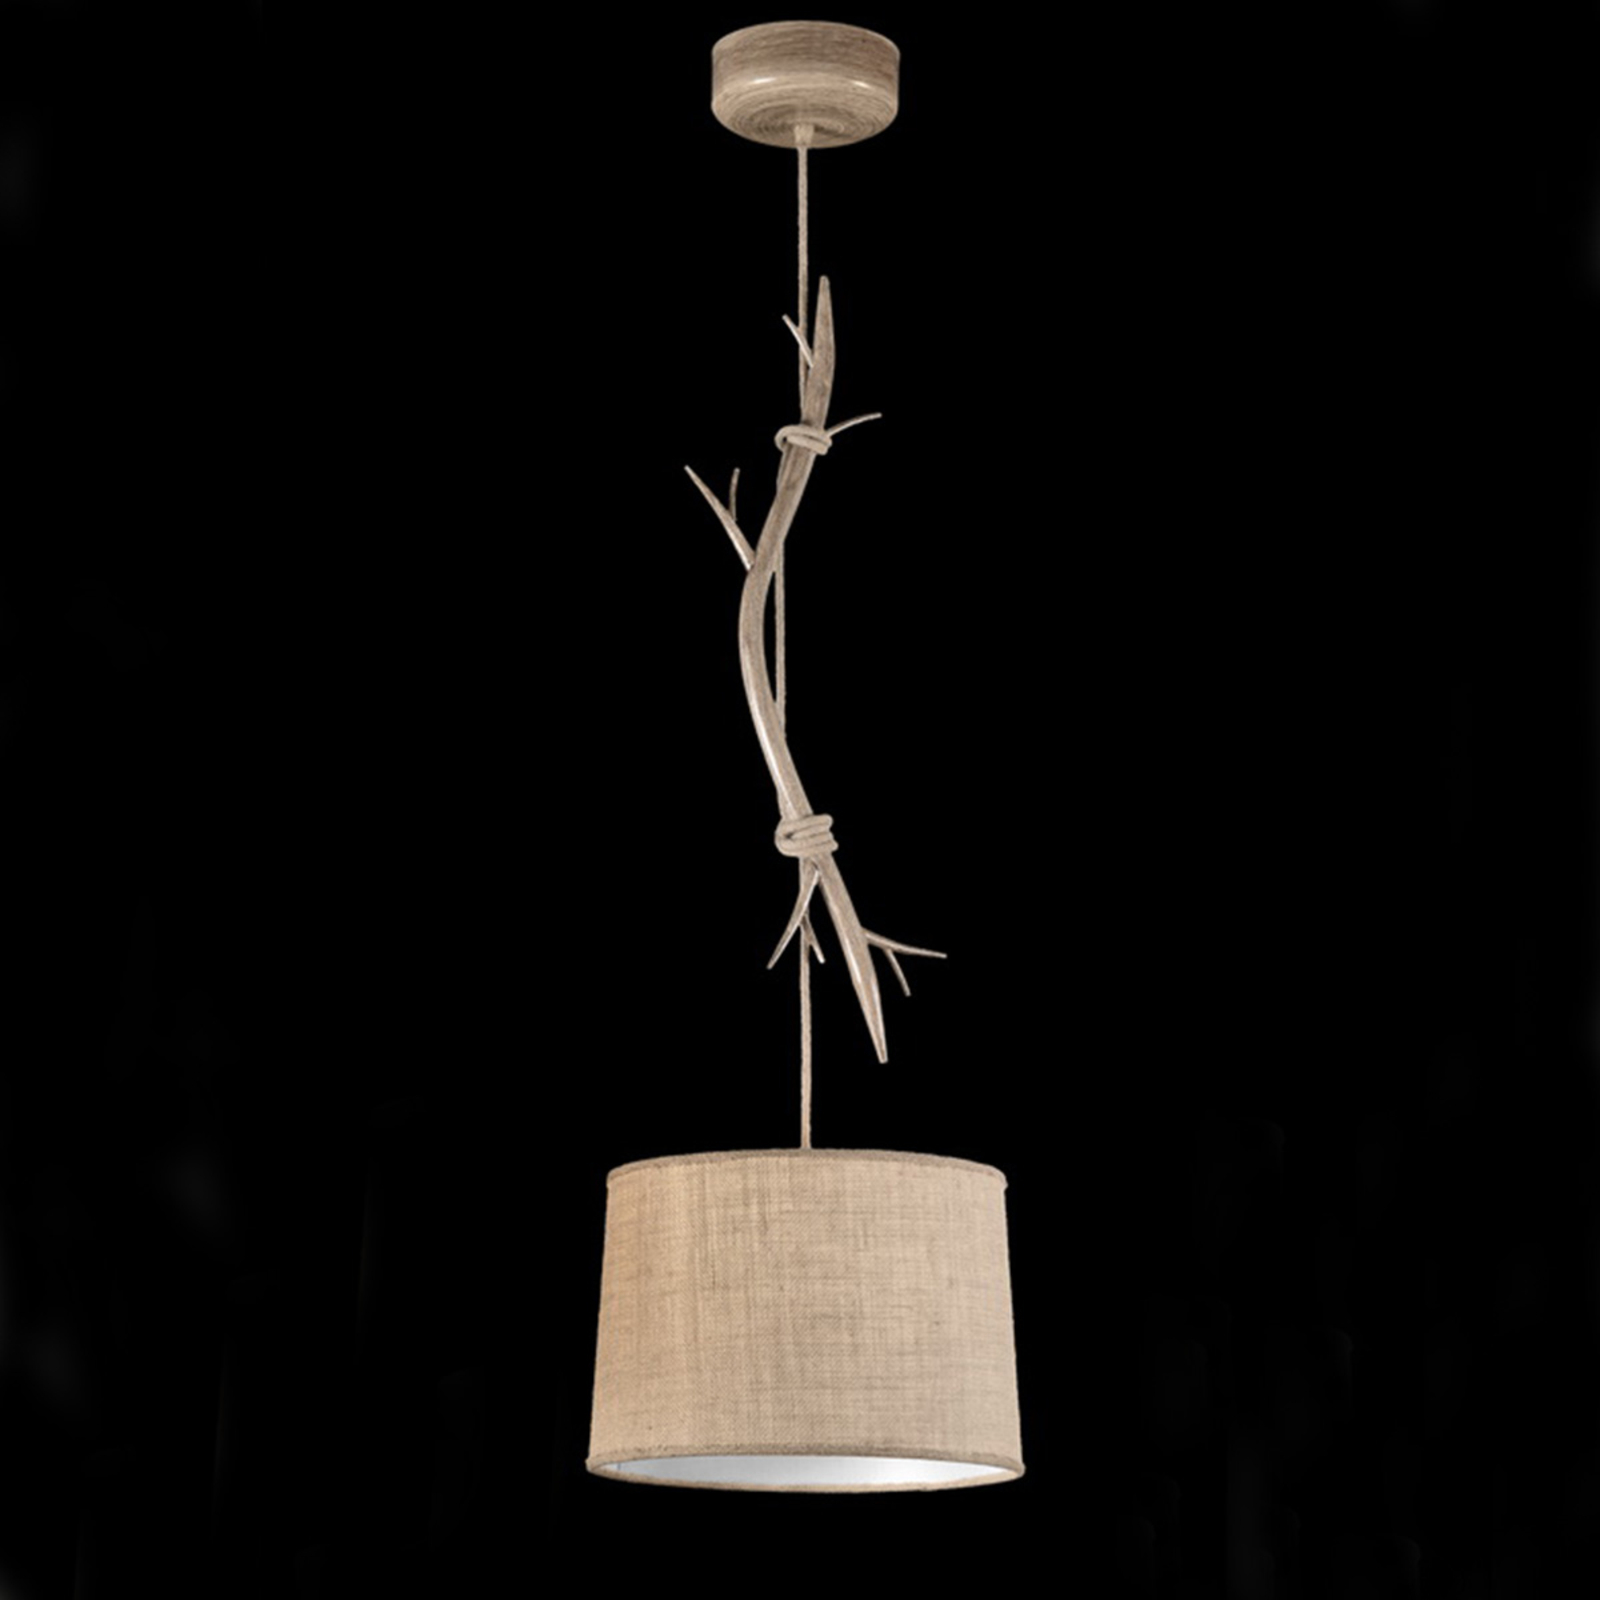 Viseća svjetiljka Sabina s tekstilnim sjenilom, 1 žarulja, 35 cm